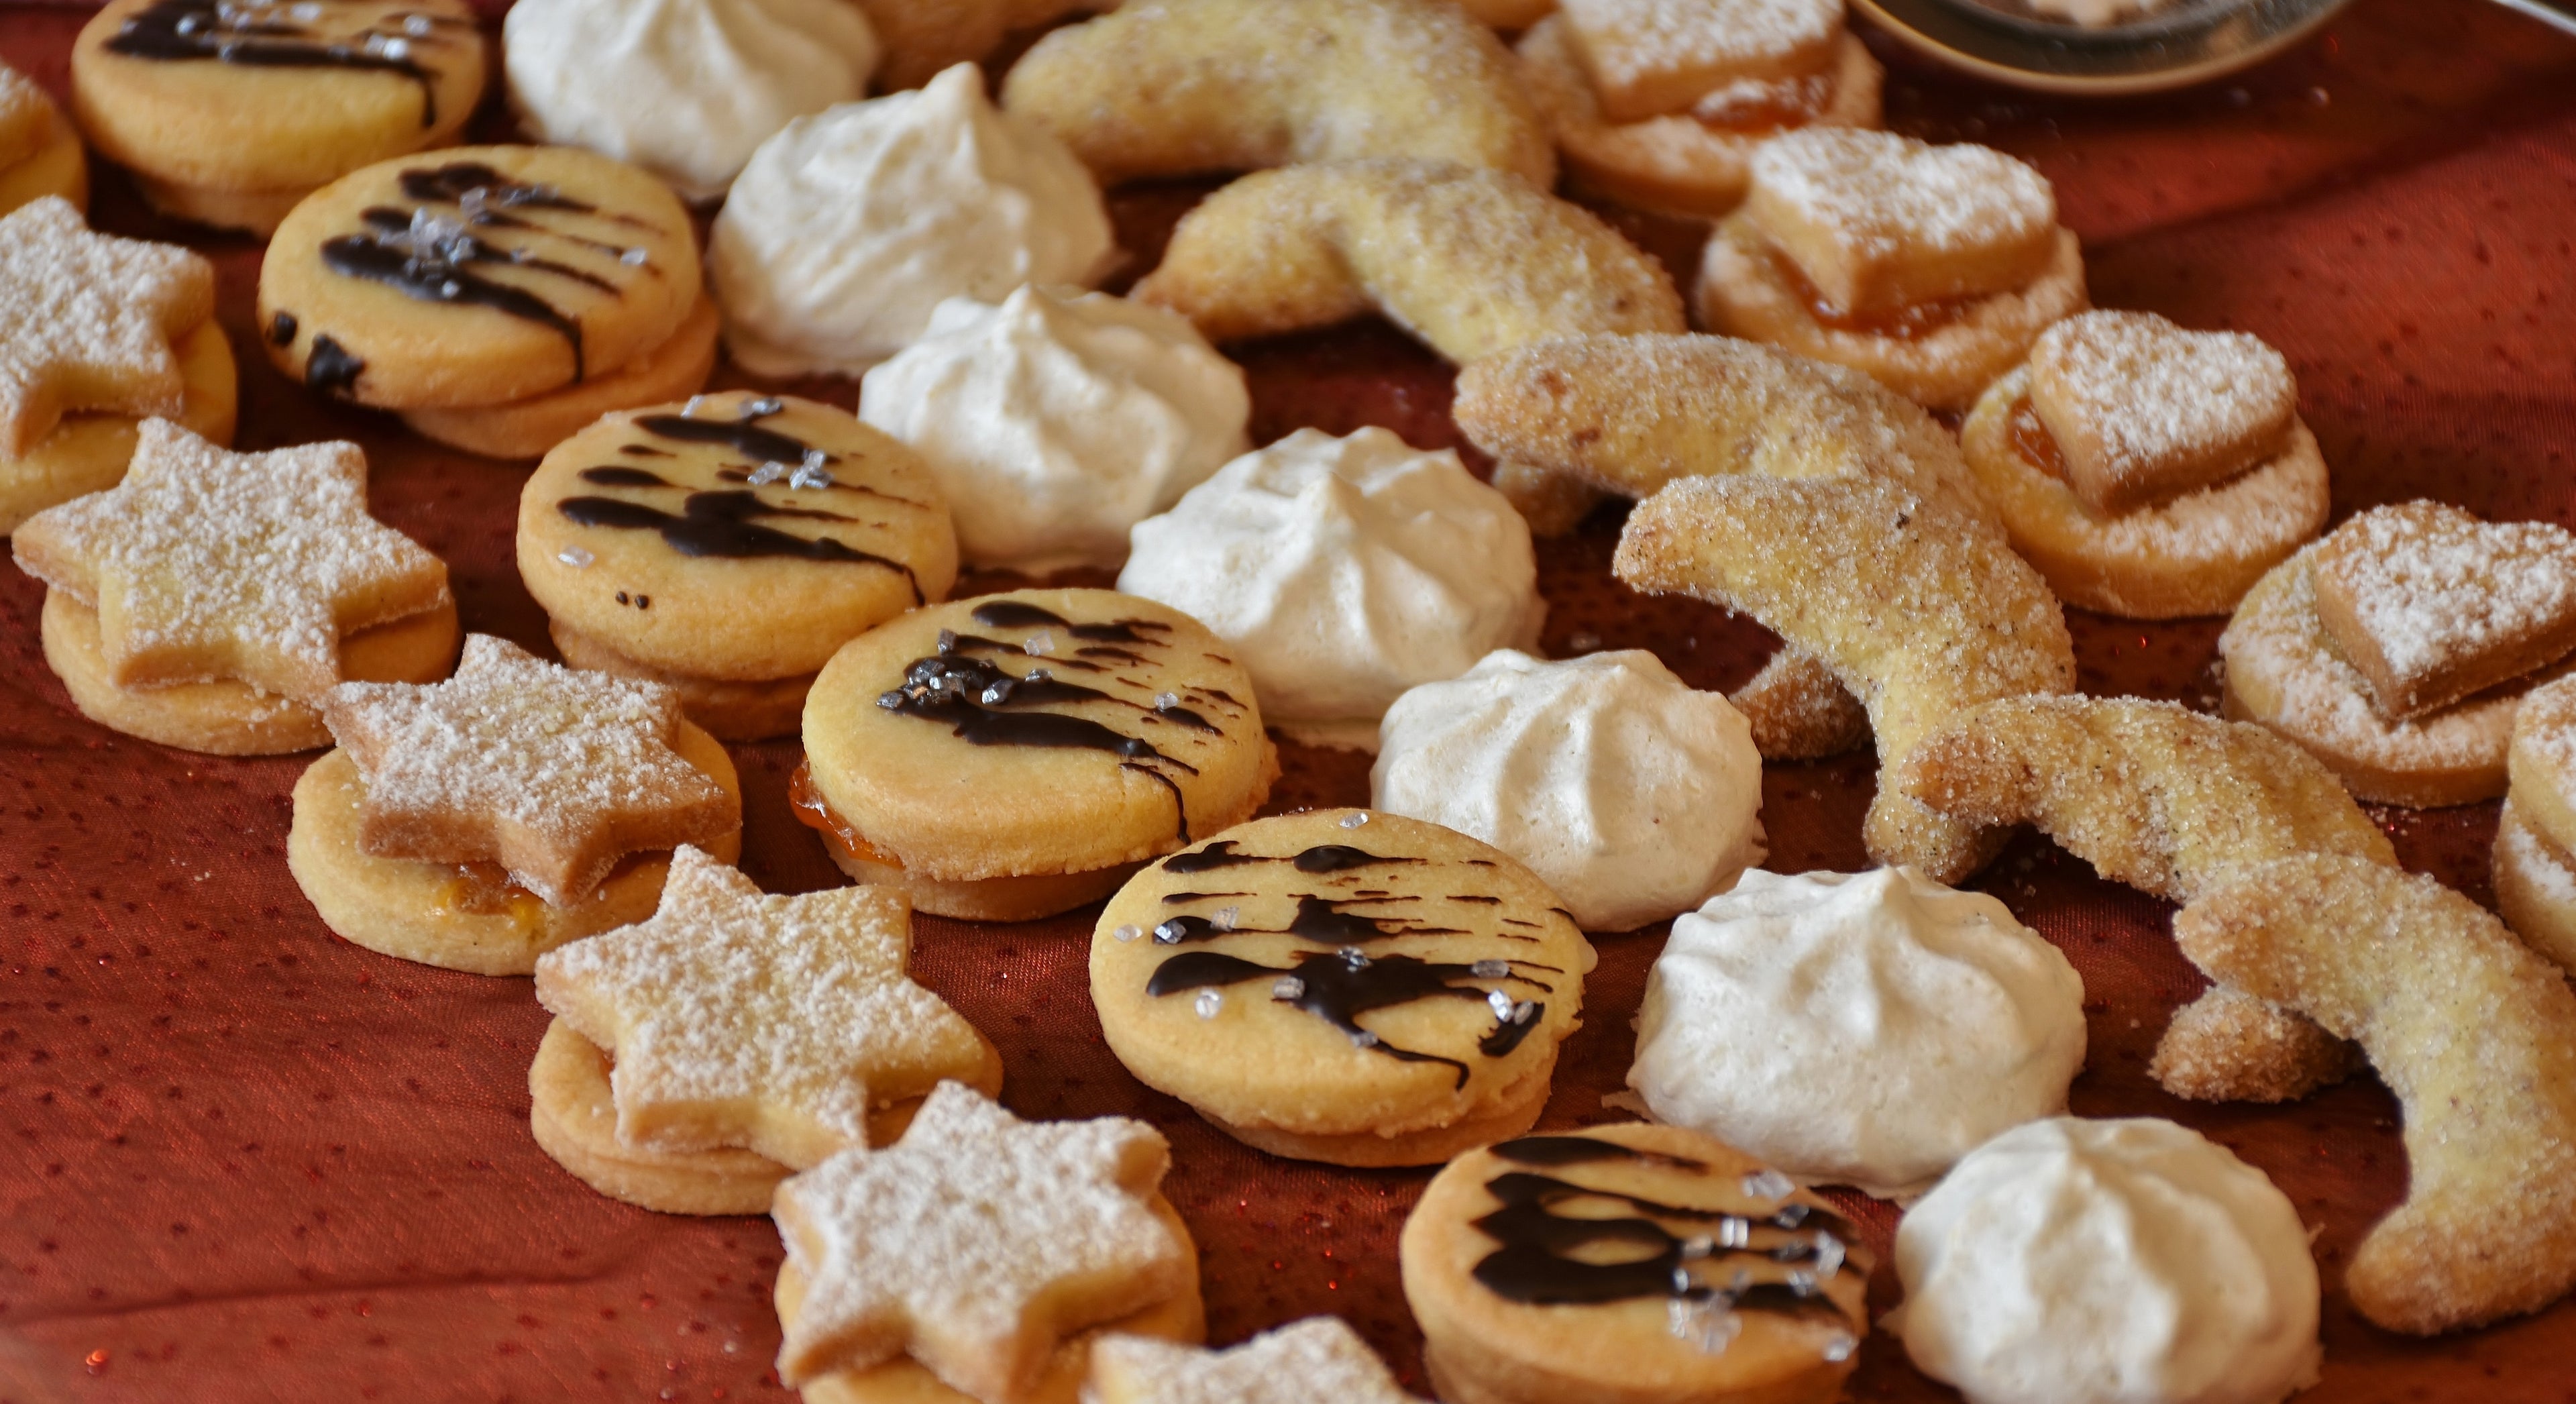 Deliciosas galletas elaboradas a mano con los mejores ingredientes de manera artesanal